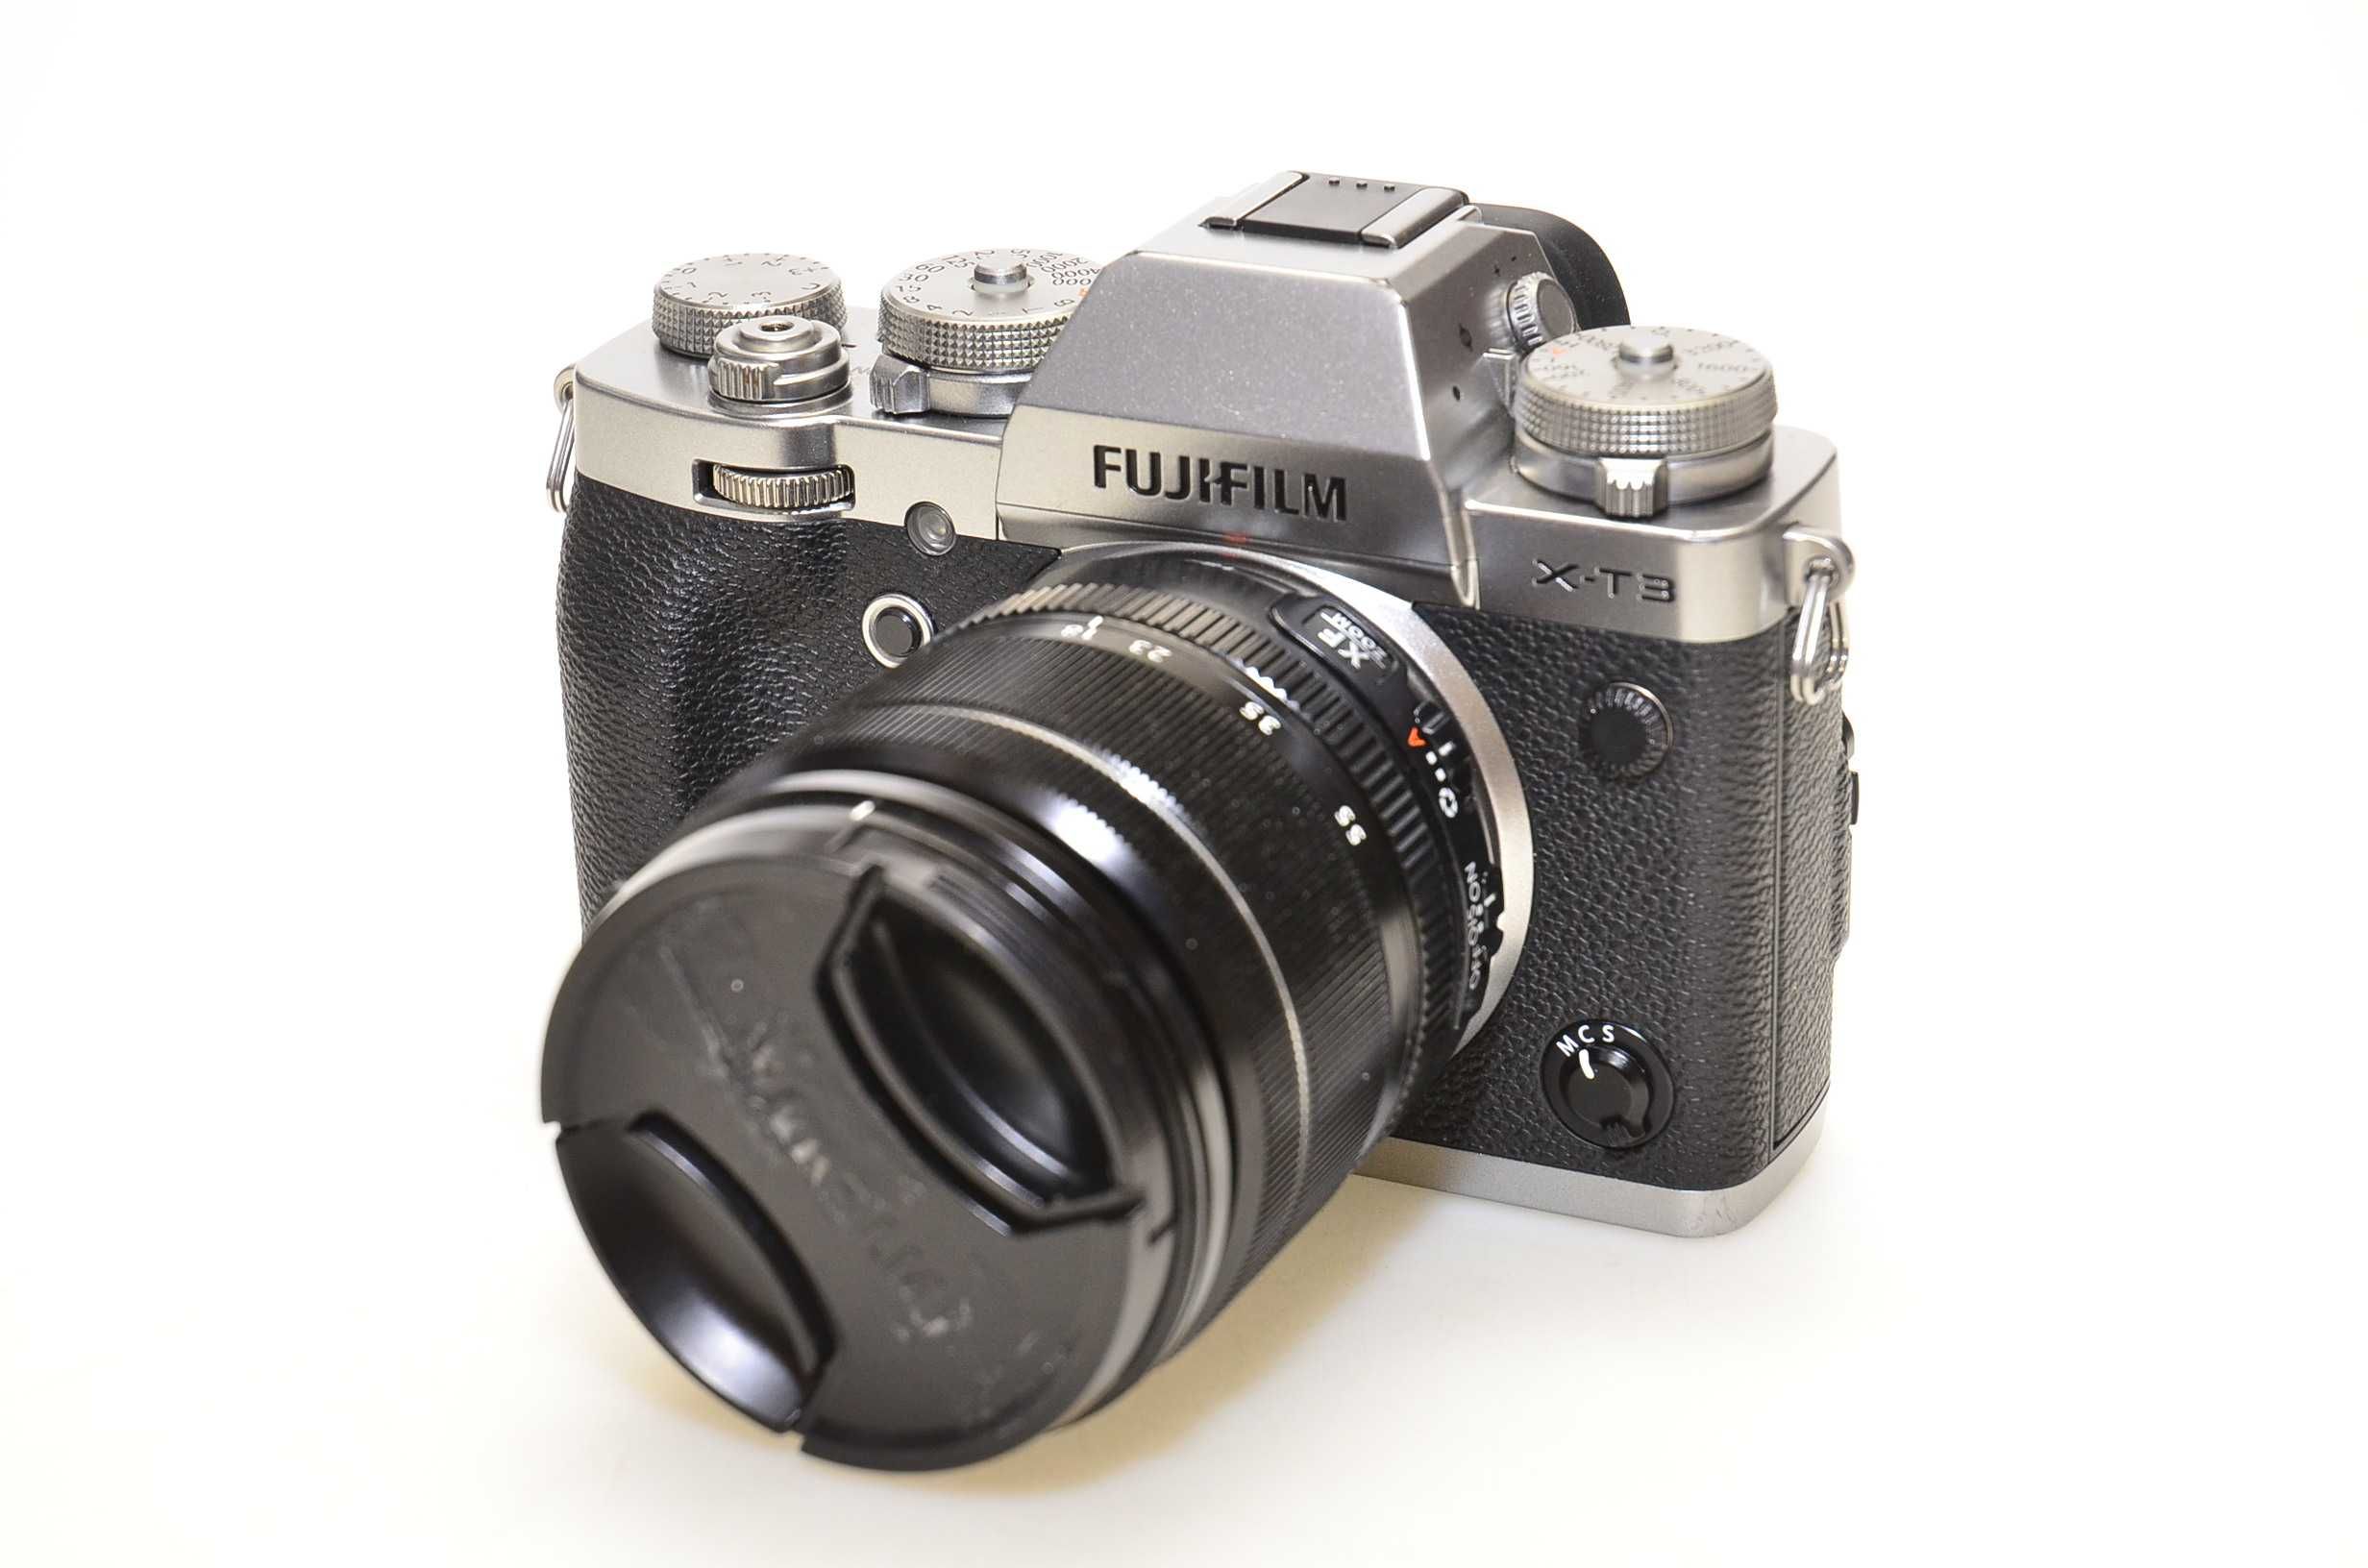 Aparat fotograficzny Fujifilm X-T3 XF 18-55 KIT  korpus + obiektyw